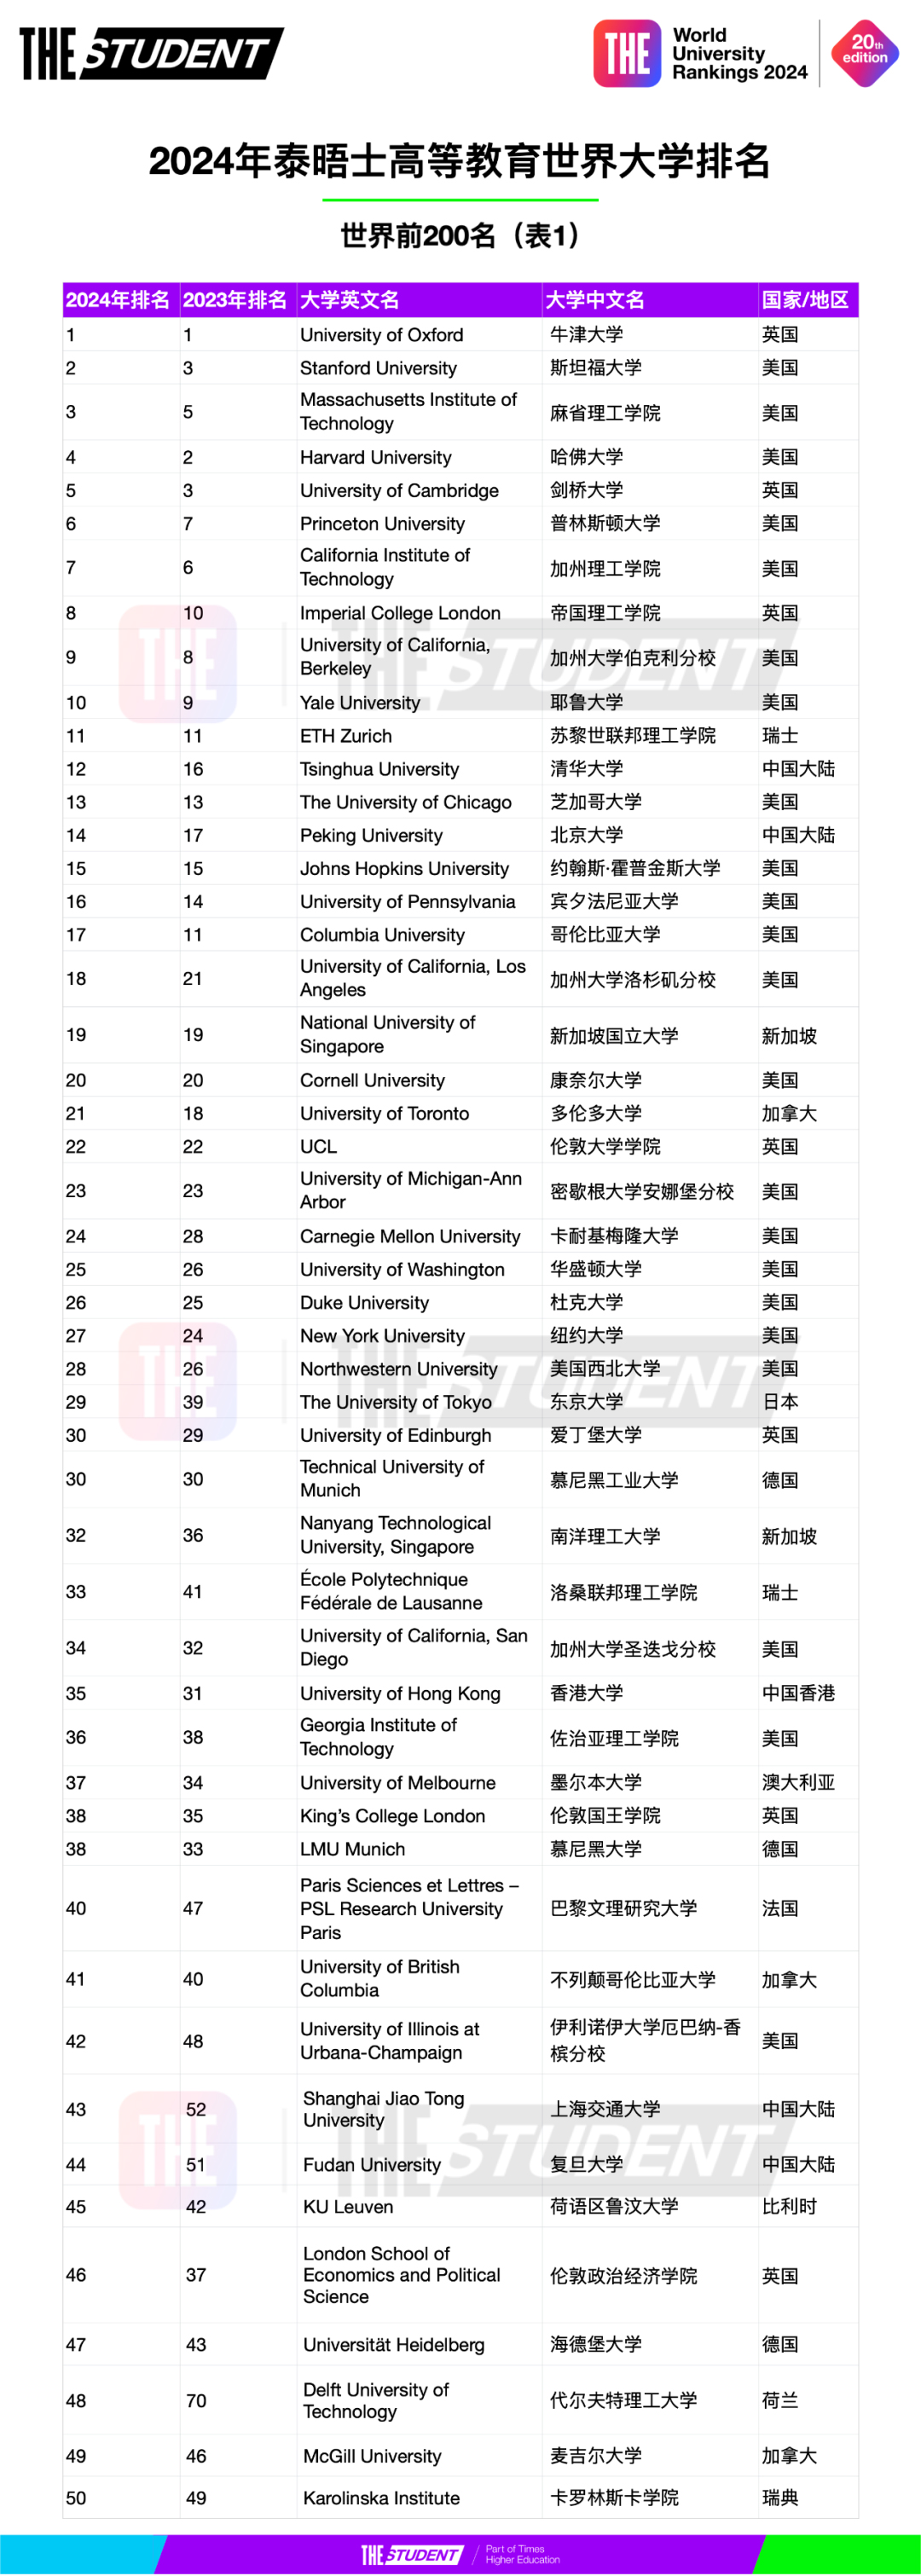 2024年泰晤士高等教育世界大学排名 (1).jpg